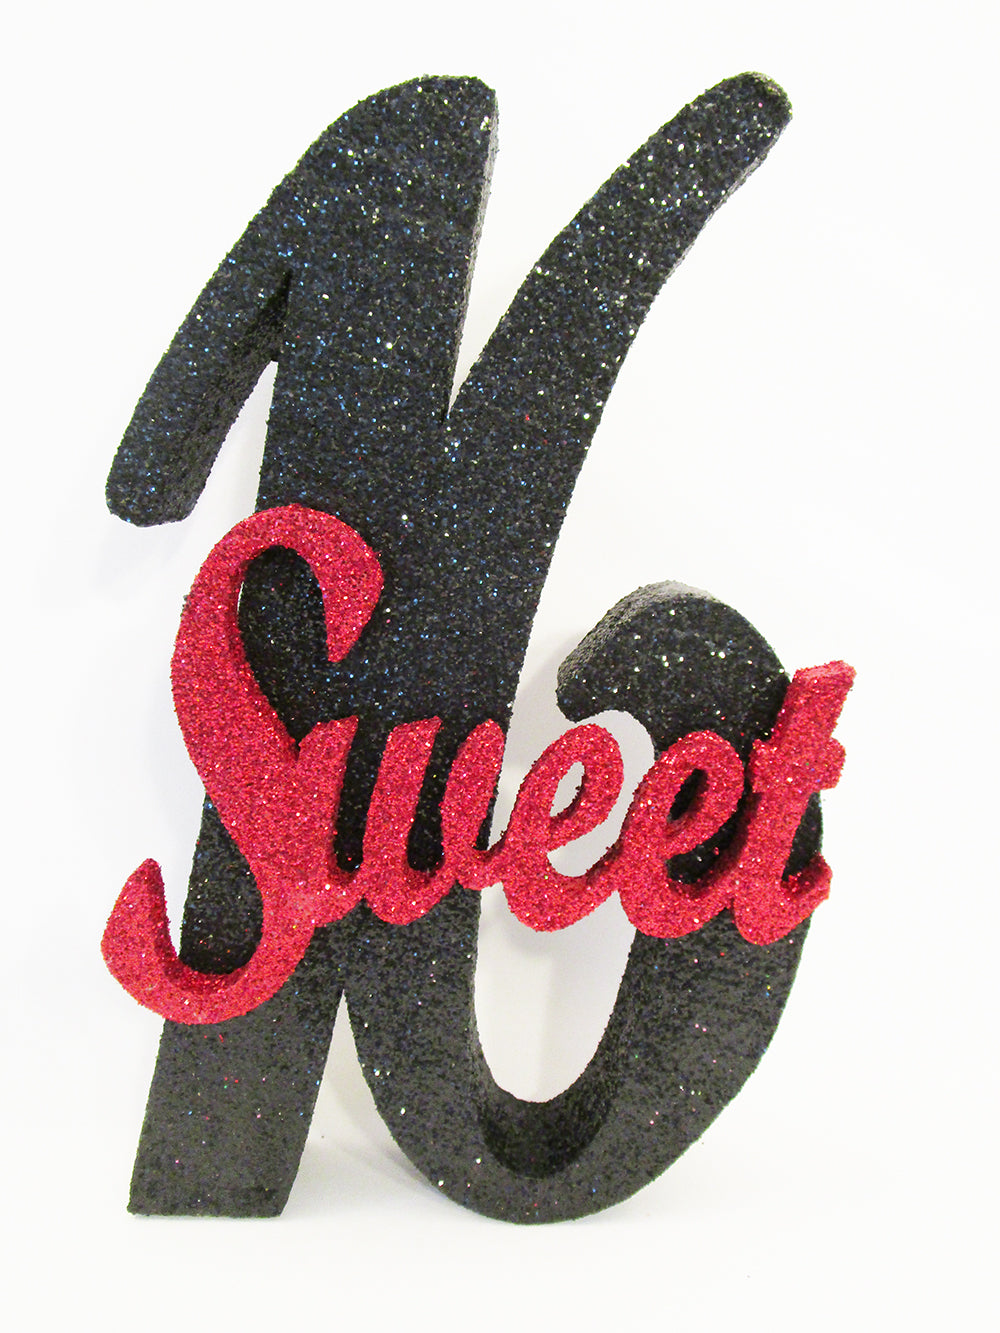 Sweet 16 styrofoam cutout - Designs by Ginny